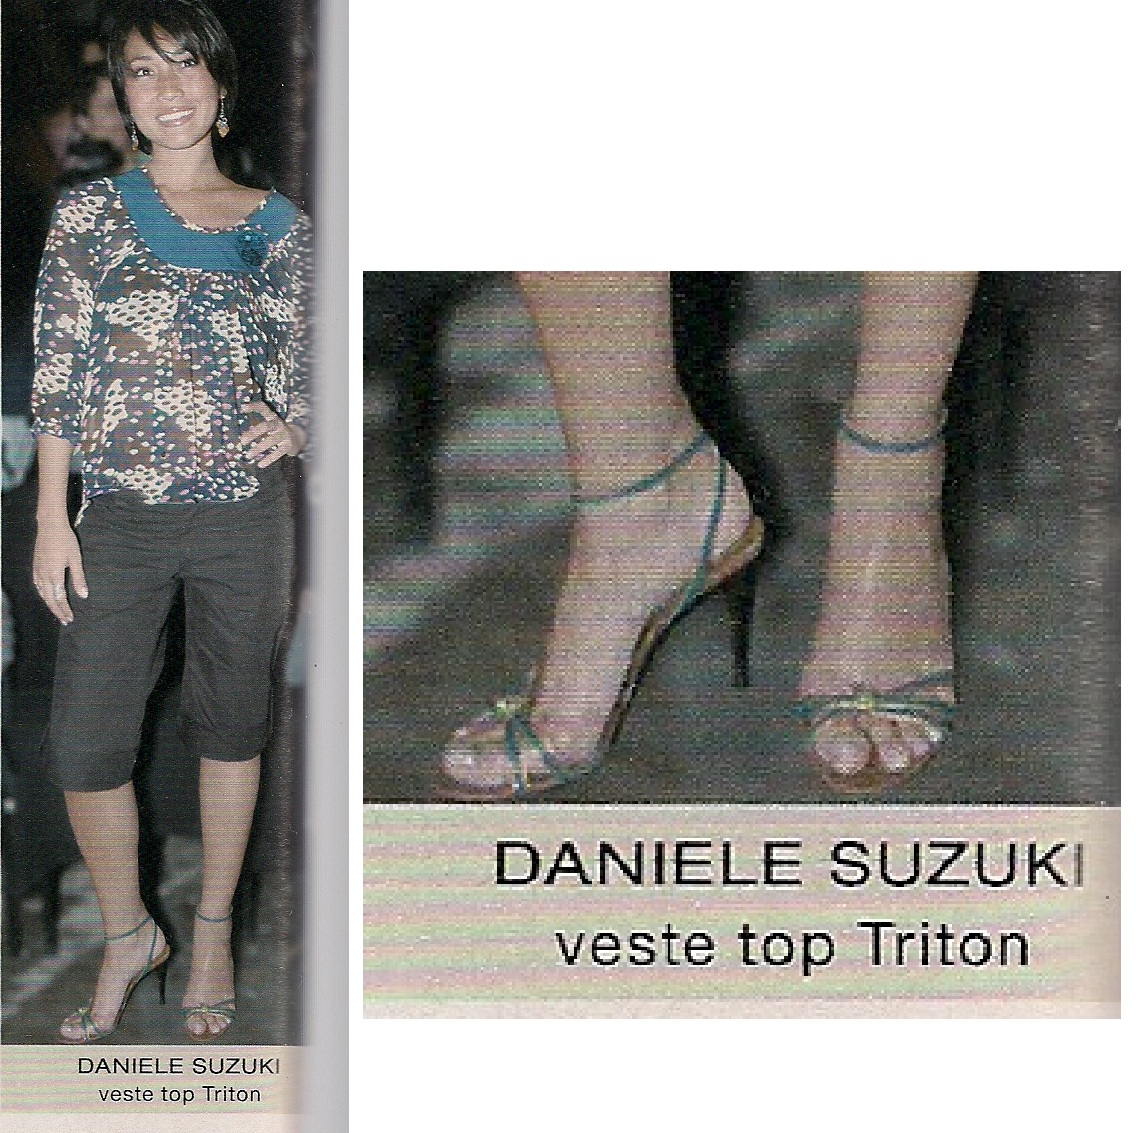 Daniele Suzuki - Wallpaper Hot